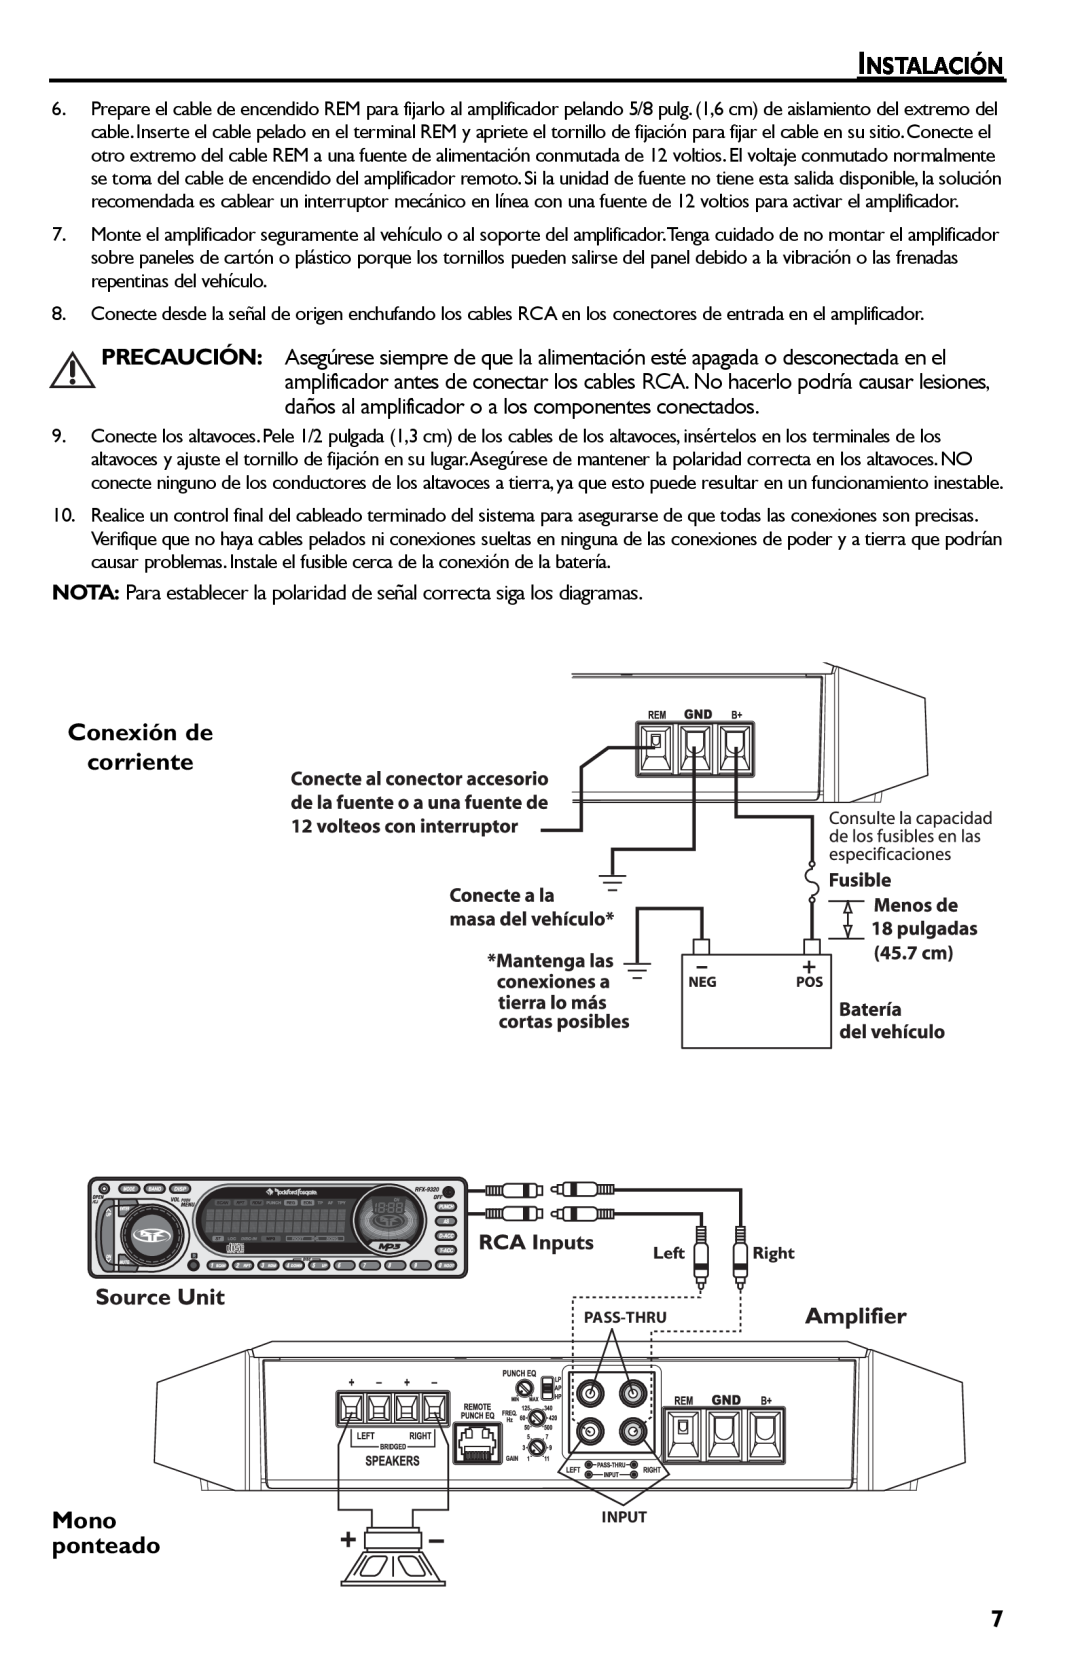 Rockford Fosgate T400-2, T600-2 manual Instalación, Conexión de corriente, Mono ponteado 